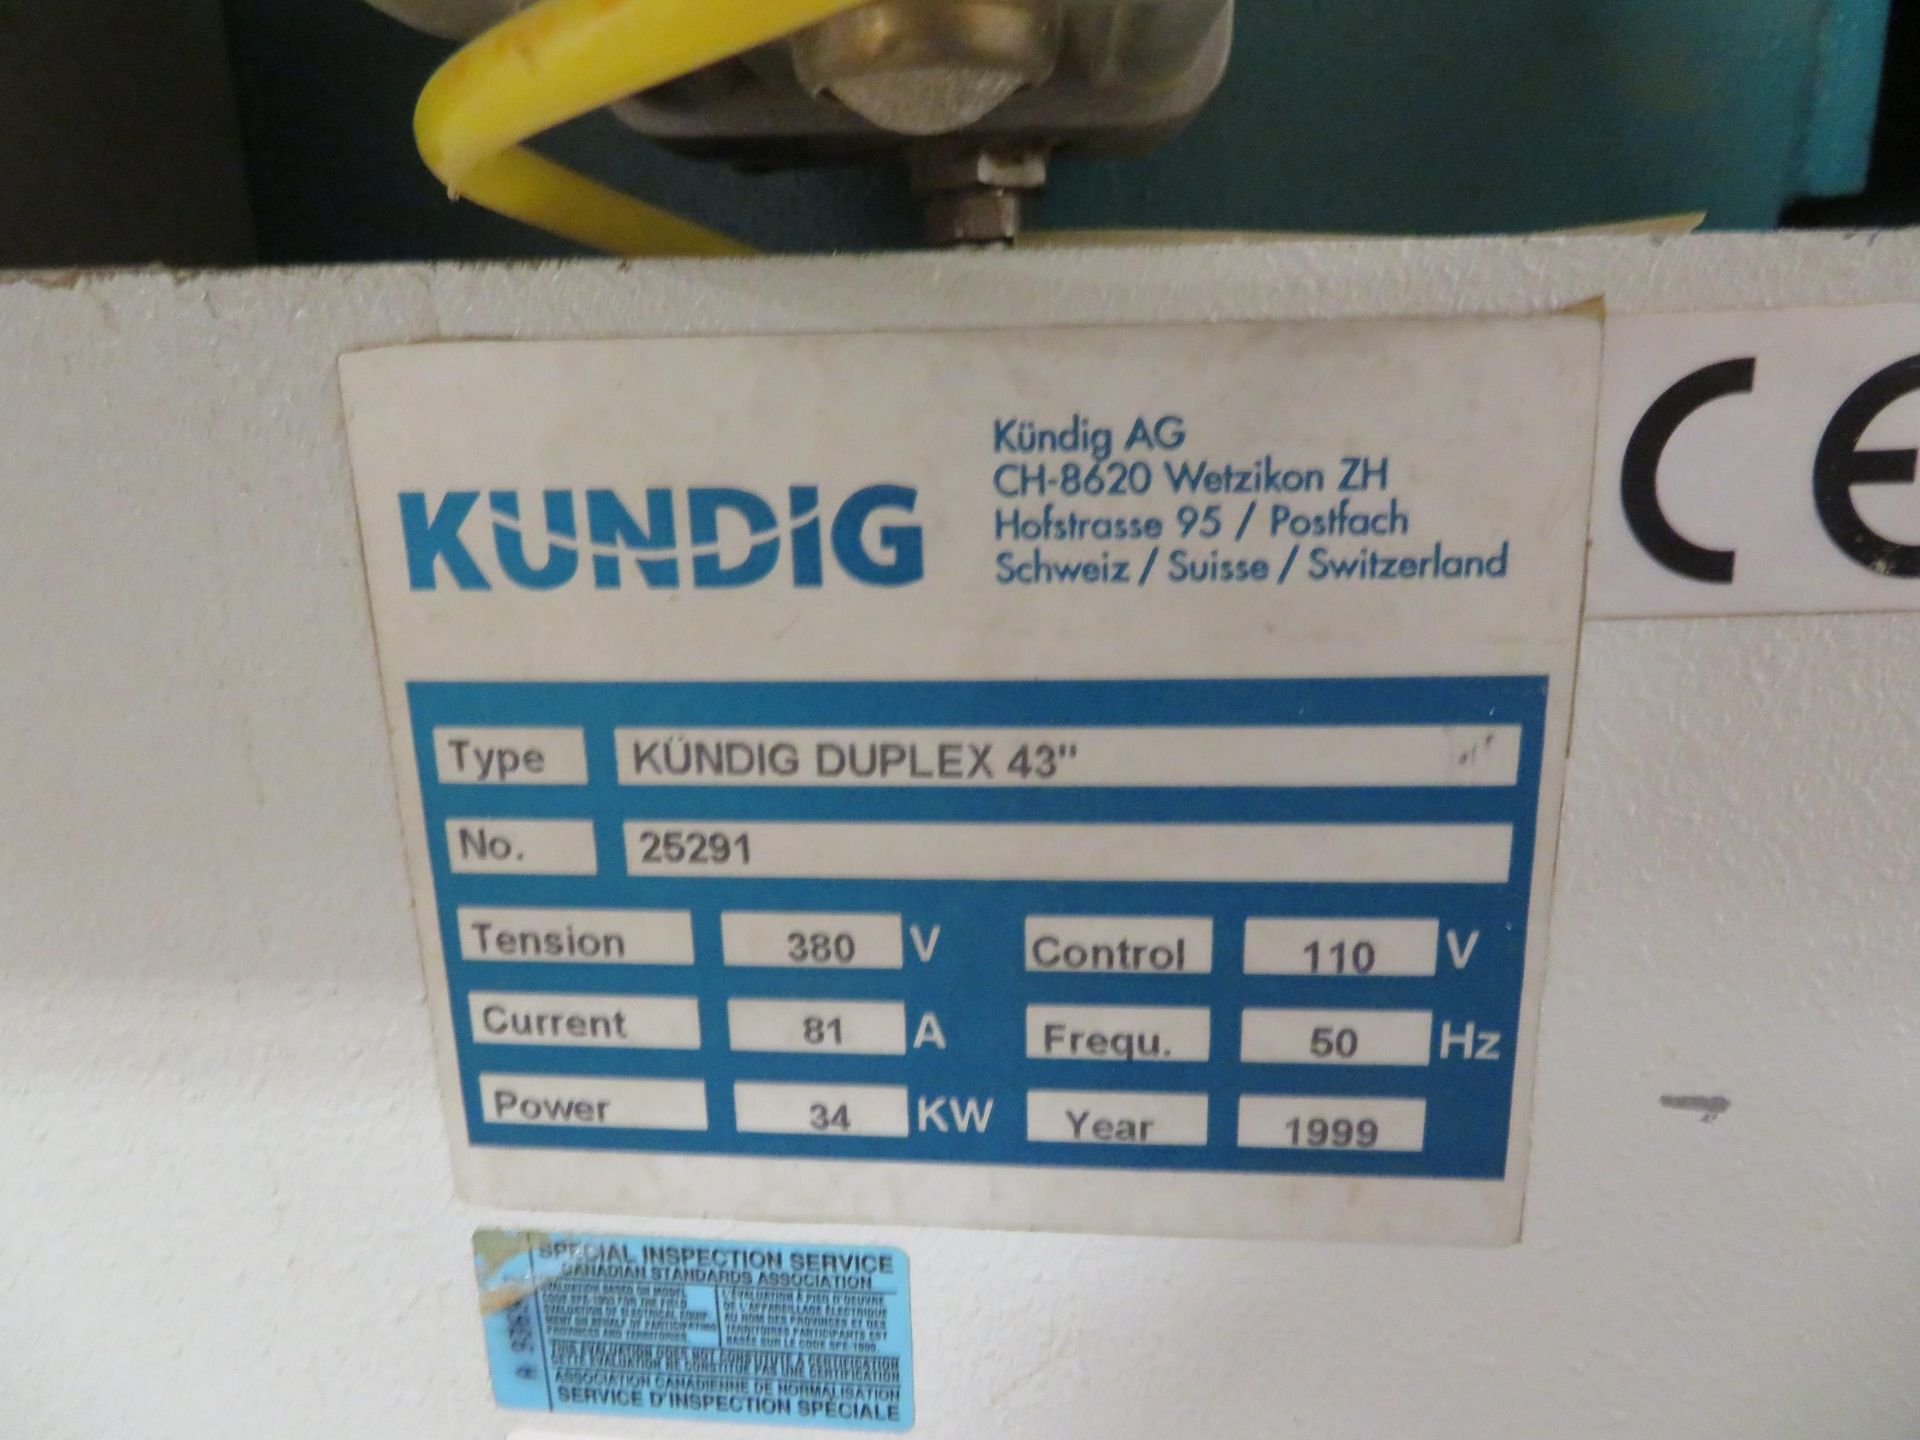 KUNDIG 2 head belt sander (1999), Mod# DUPLEX 43, Tension 380 V, current 81 A, Power 34 KW, - Image 11 of 13